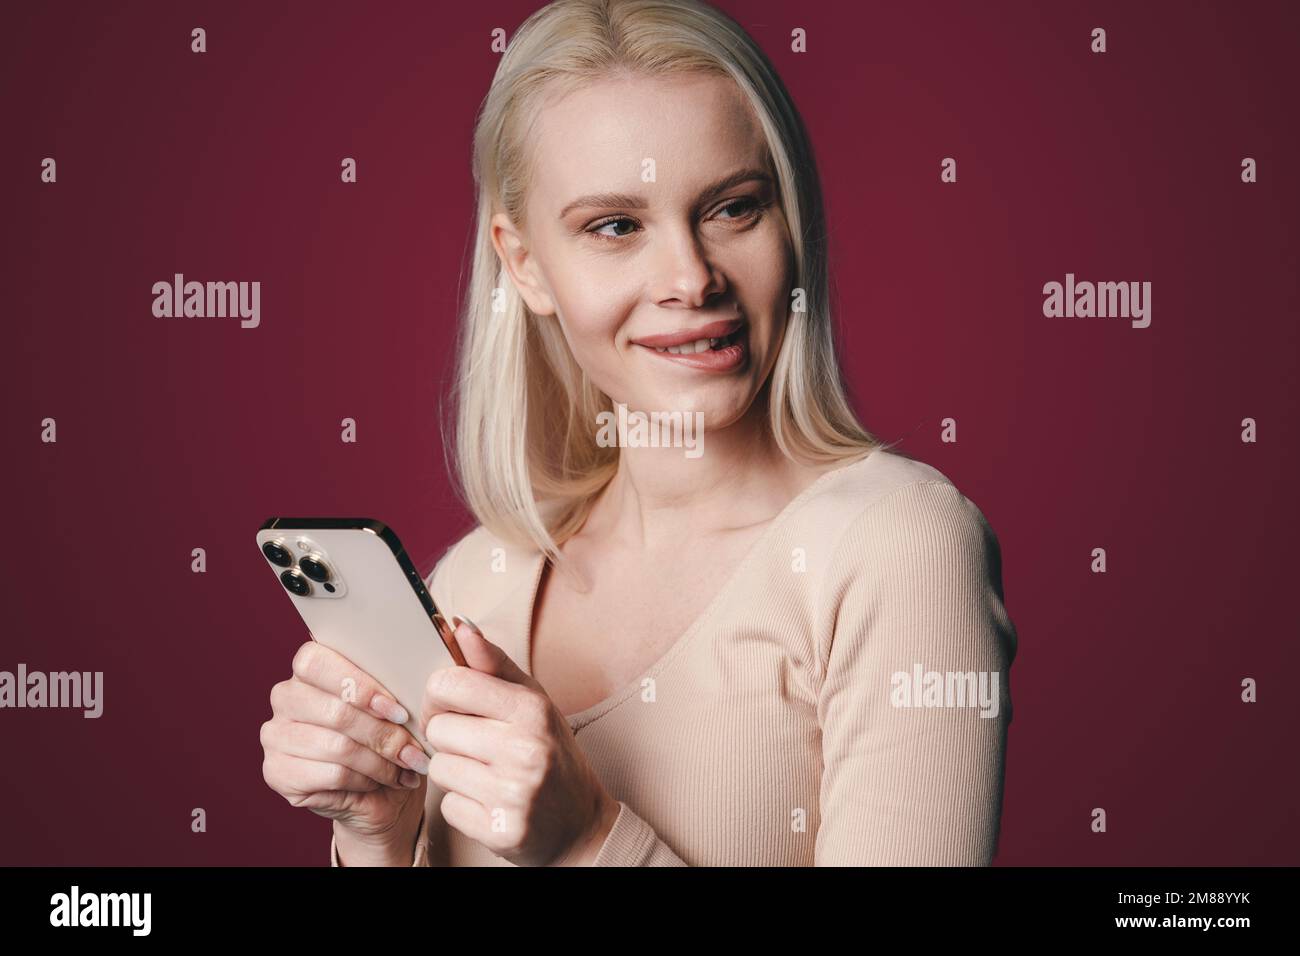 Porträt einer hübschen Blondine, die auf einem kirschfarbenen Hintergrund steht und am Telefon SMS schreibt, mit einem nachdenklichen Gesichtsausdruck, der ihr auf die Lippen beißt. Konzept Stockfoto